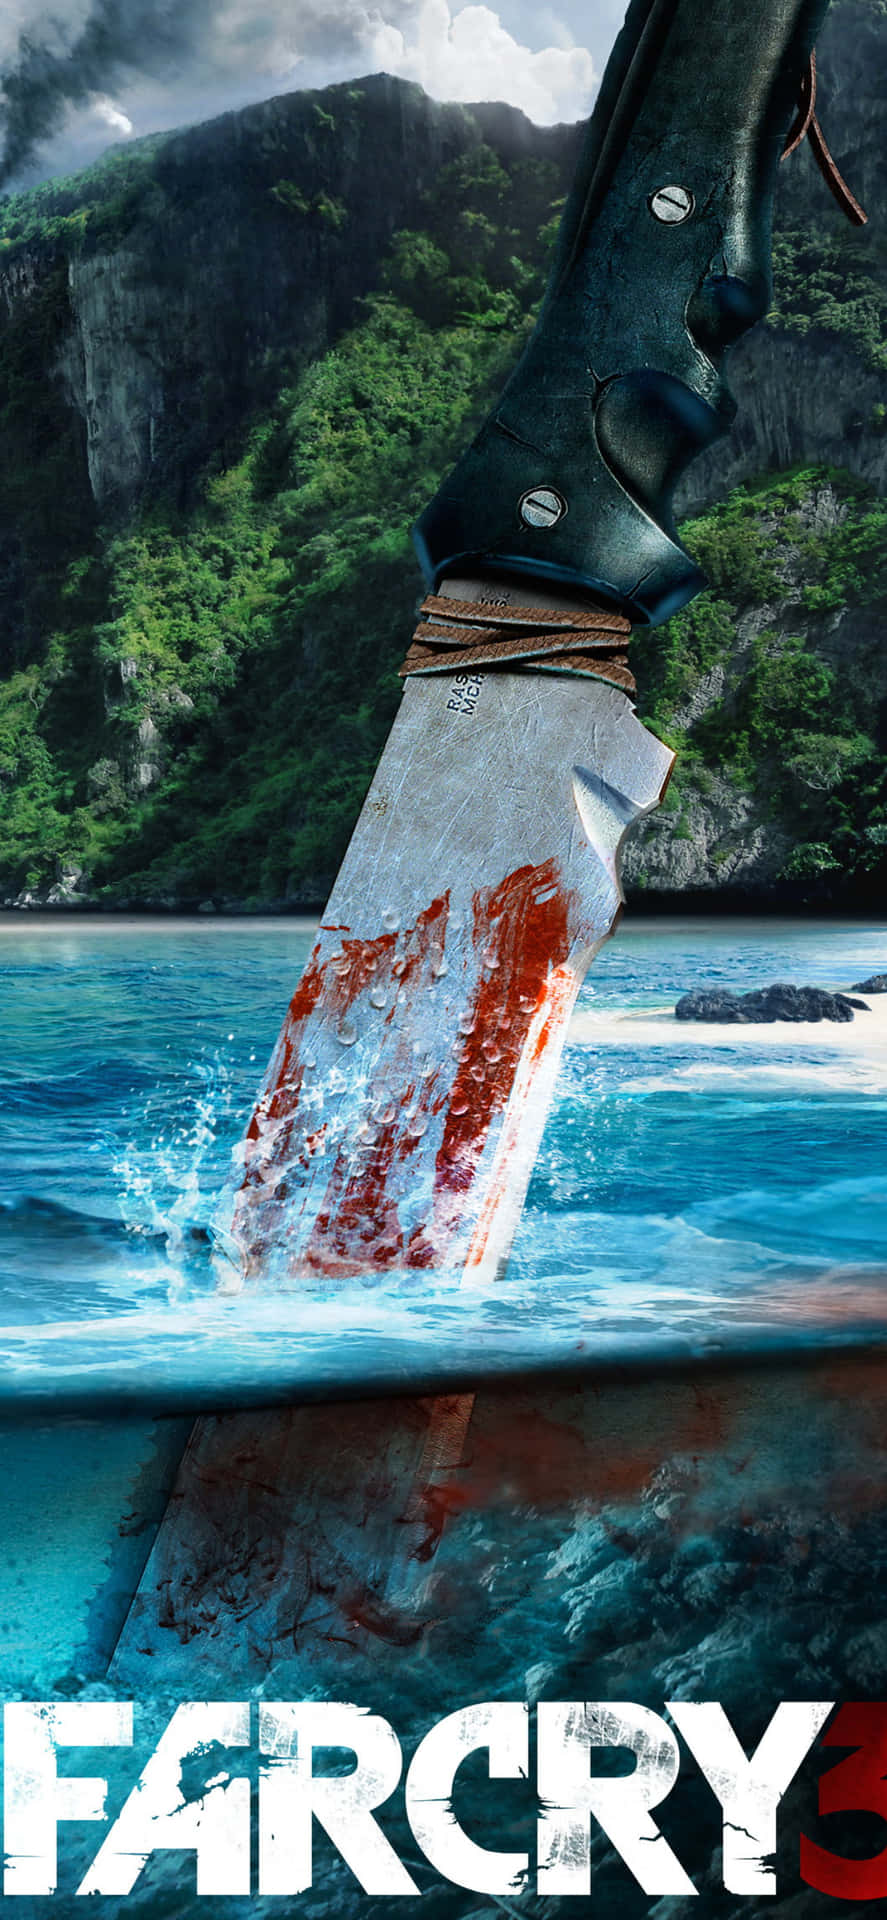 Iphonexs Max Bakgrundsbild Från Far Cry 3 Med Kniven På Rook Island.